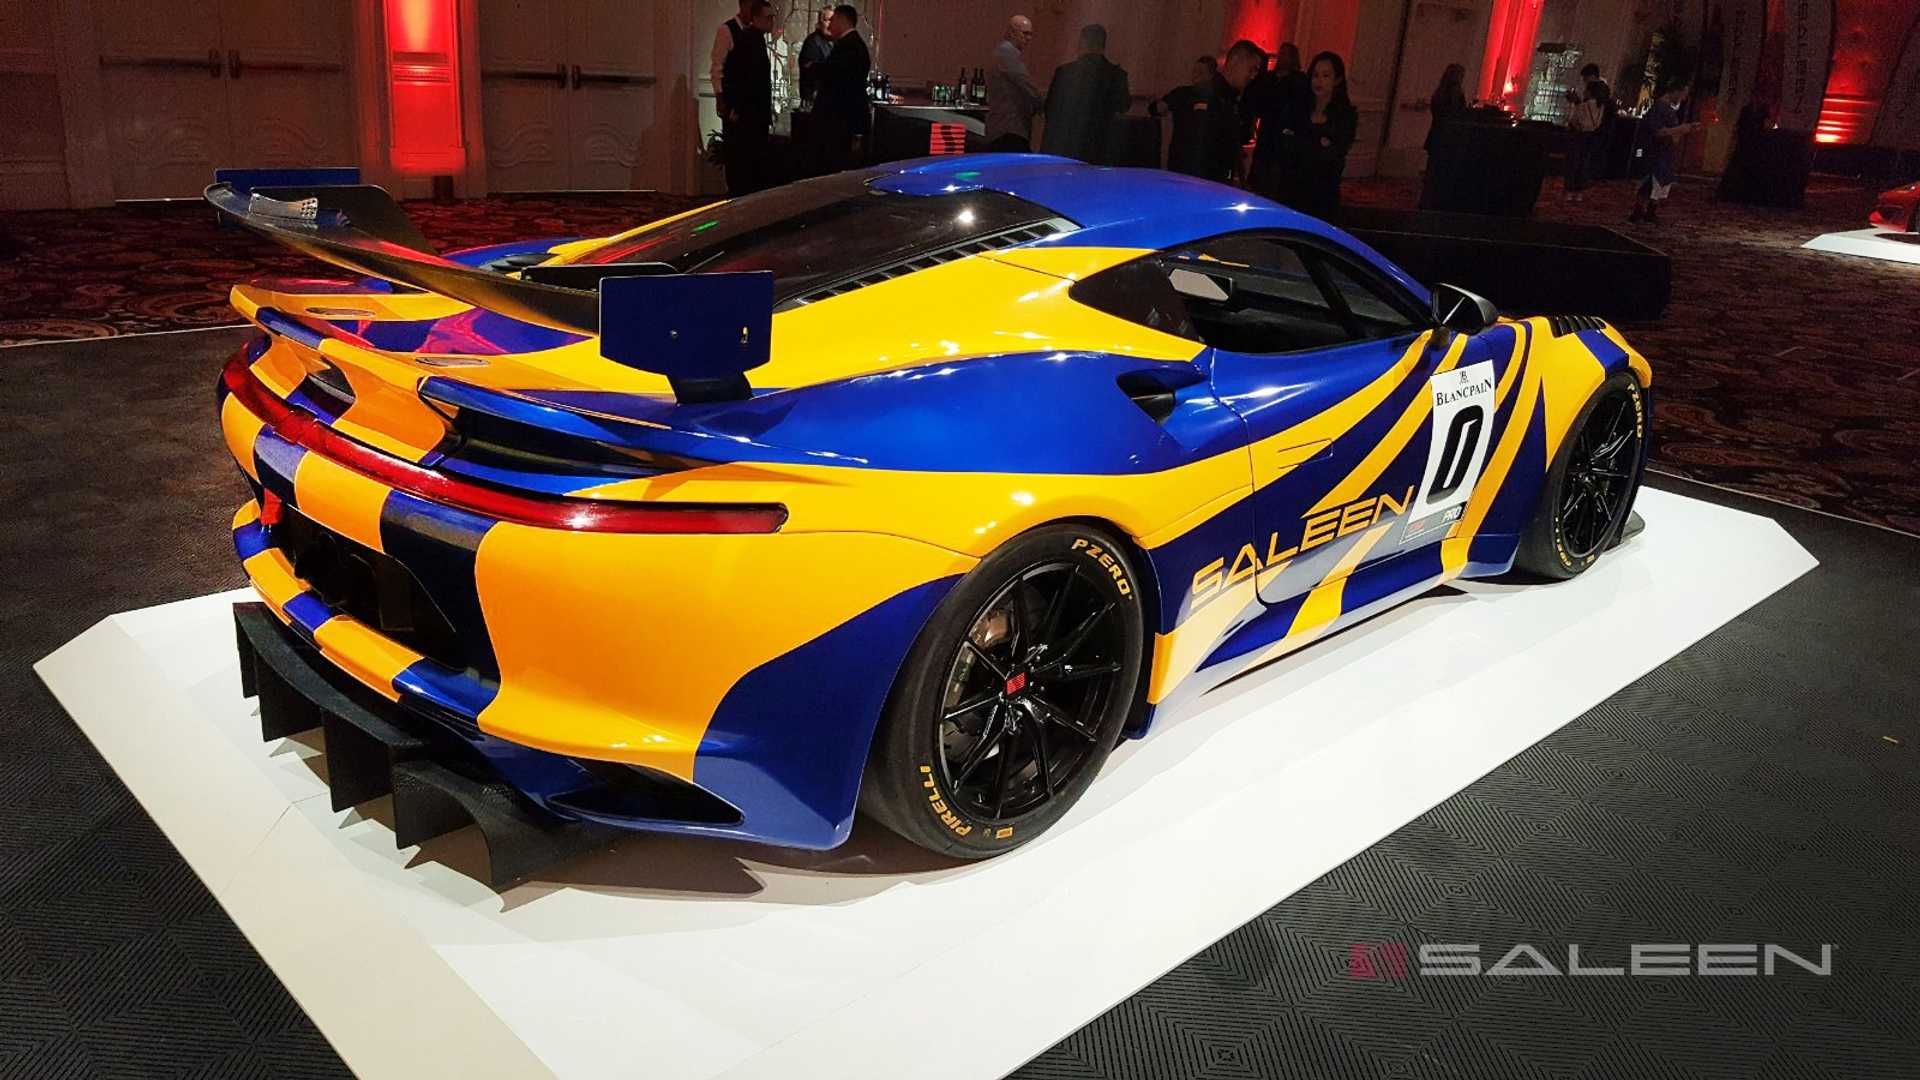 2020 Saleen GT4 Concept Race Car